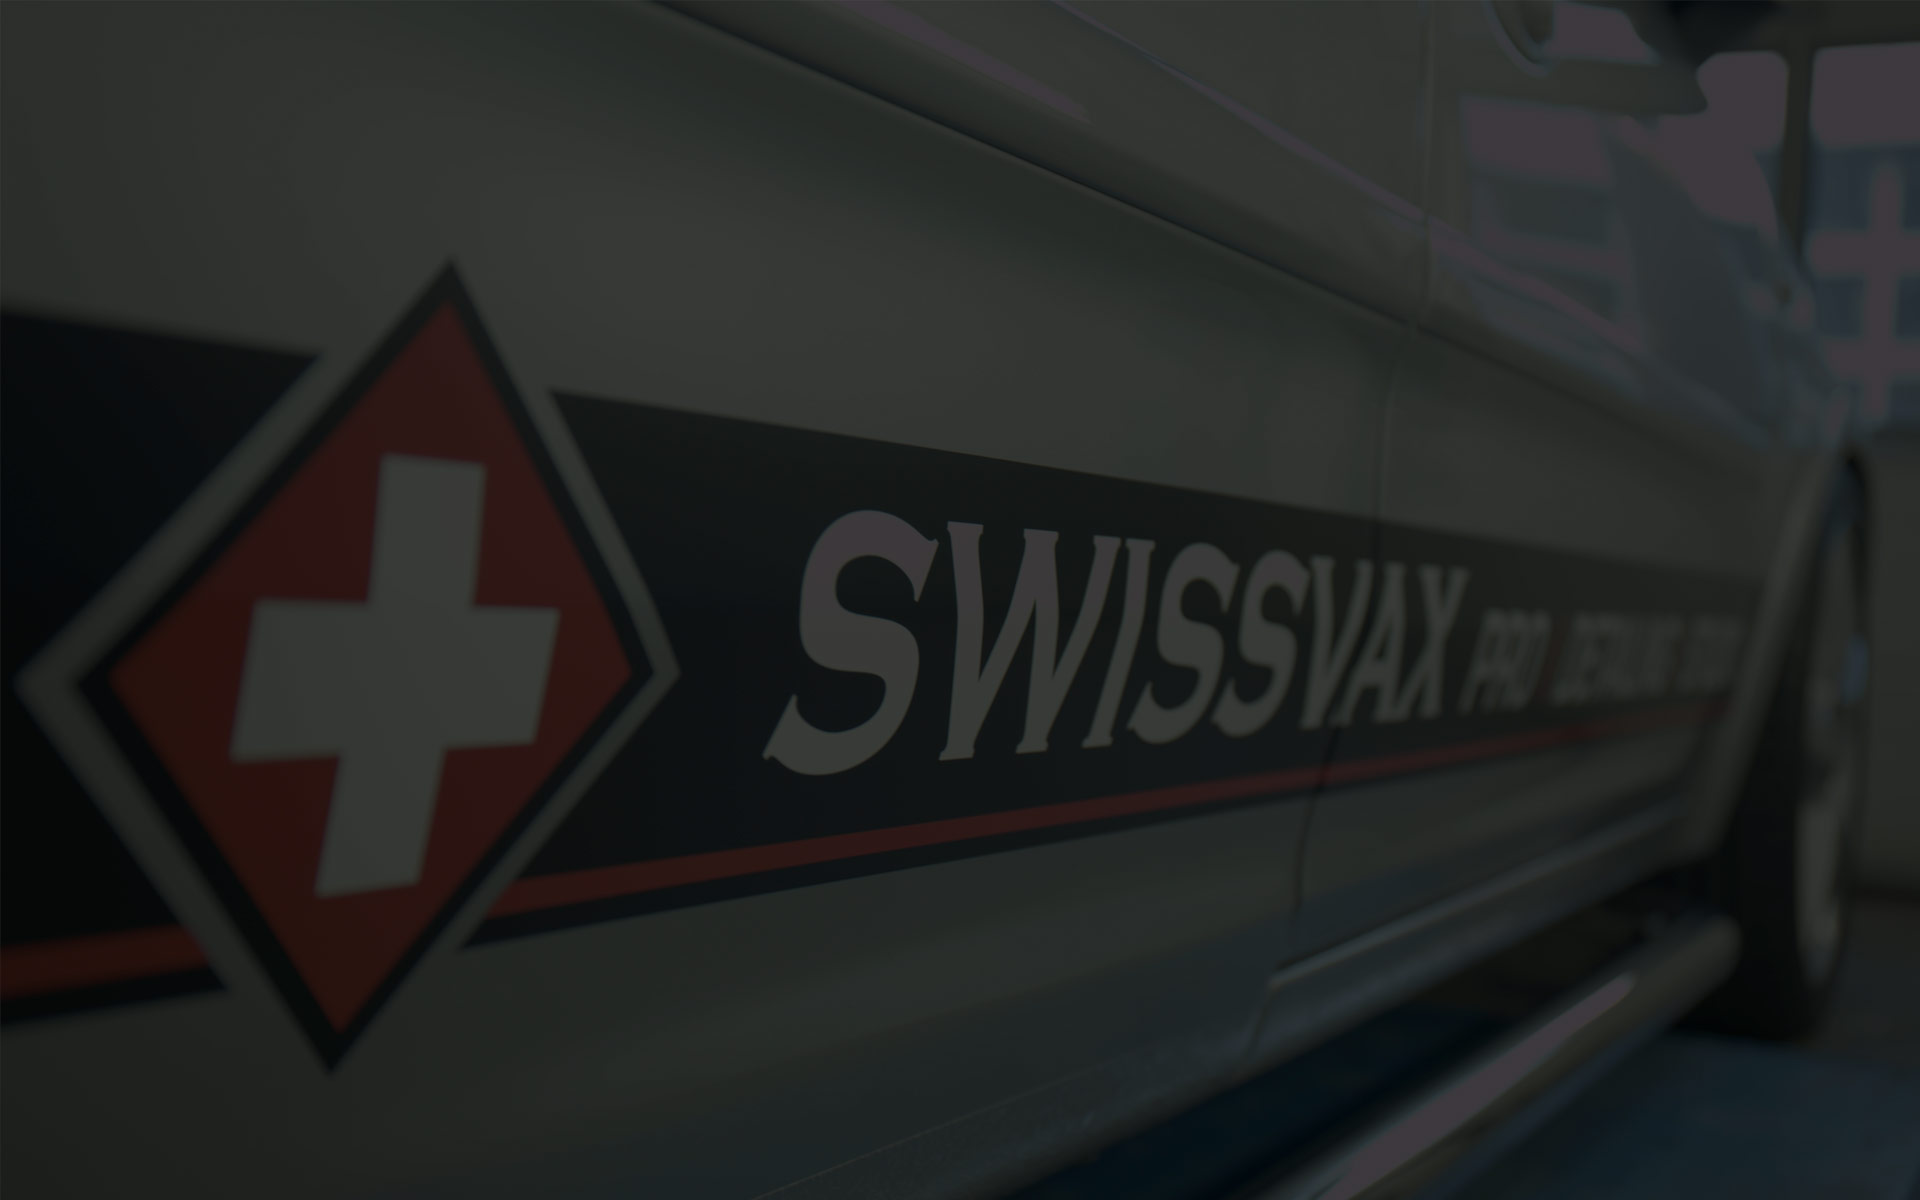 Swissvax